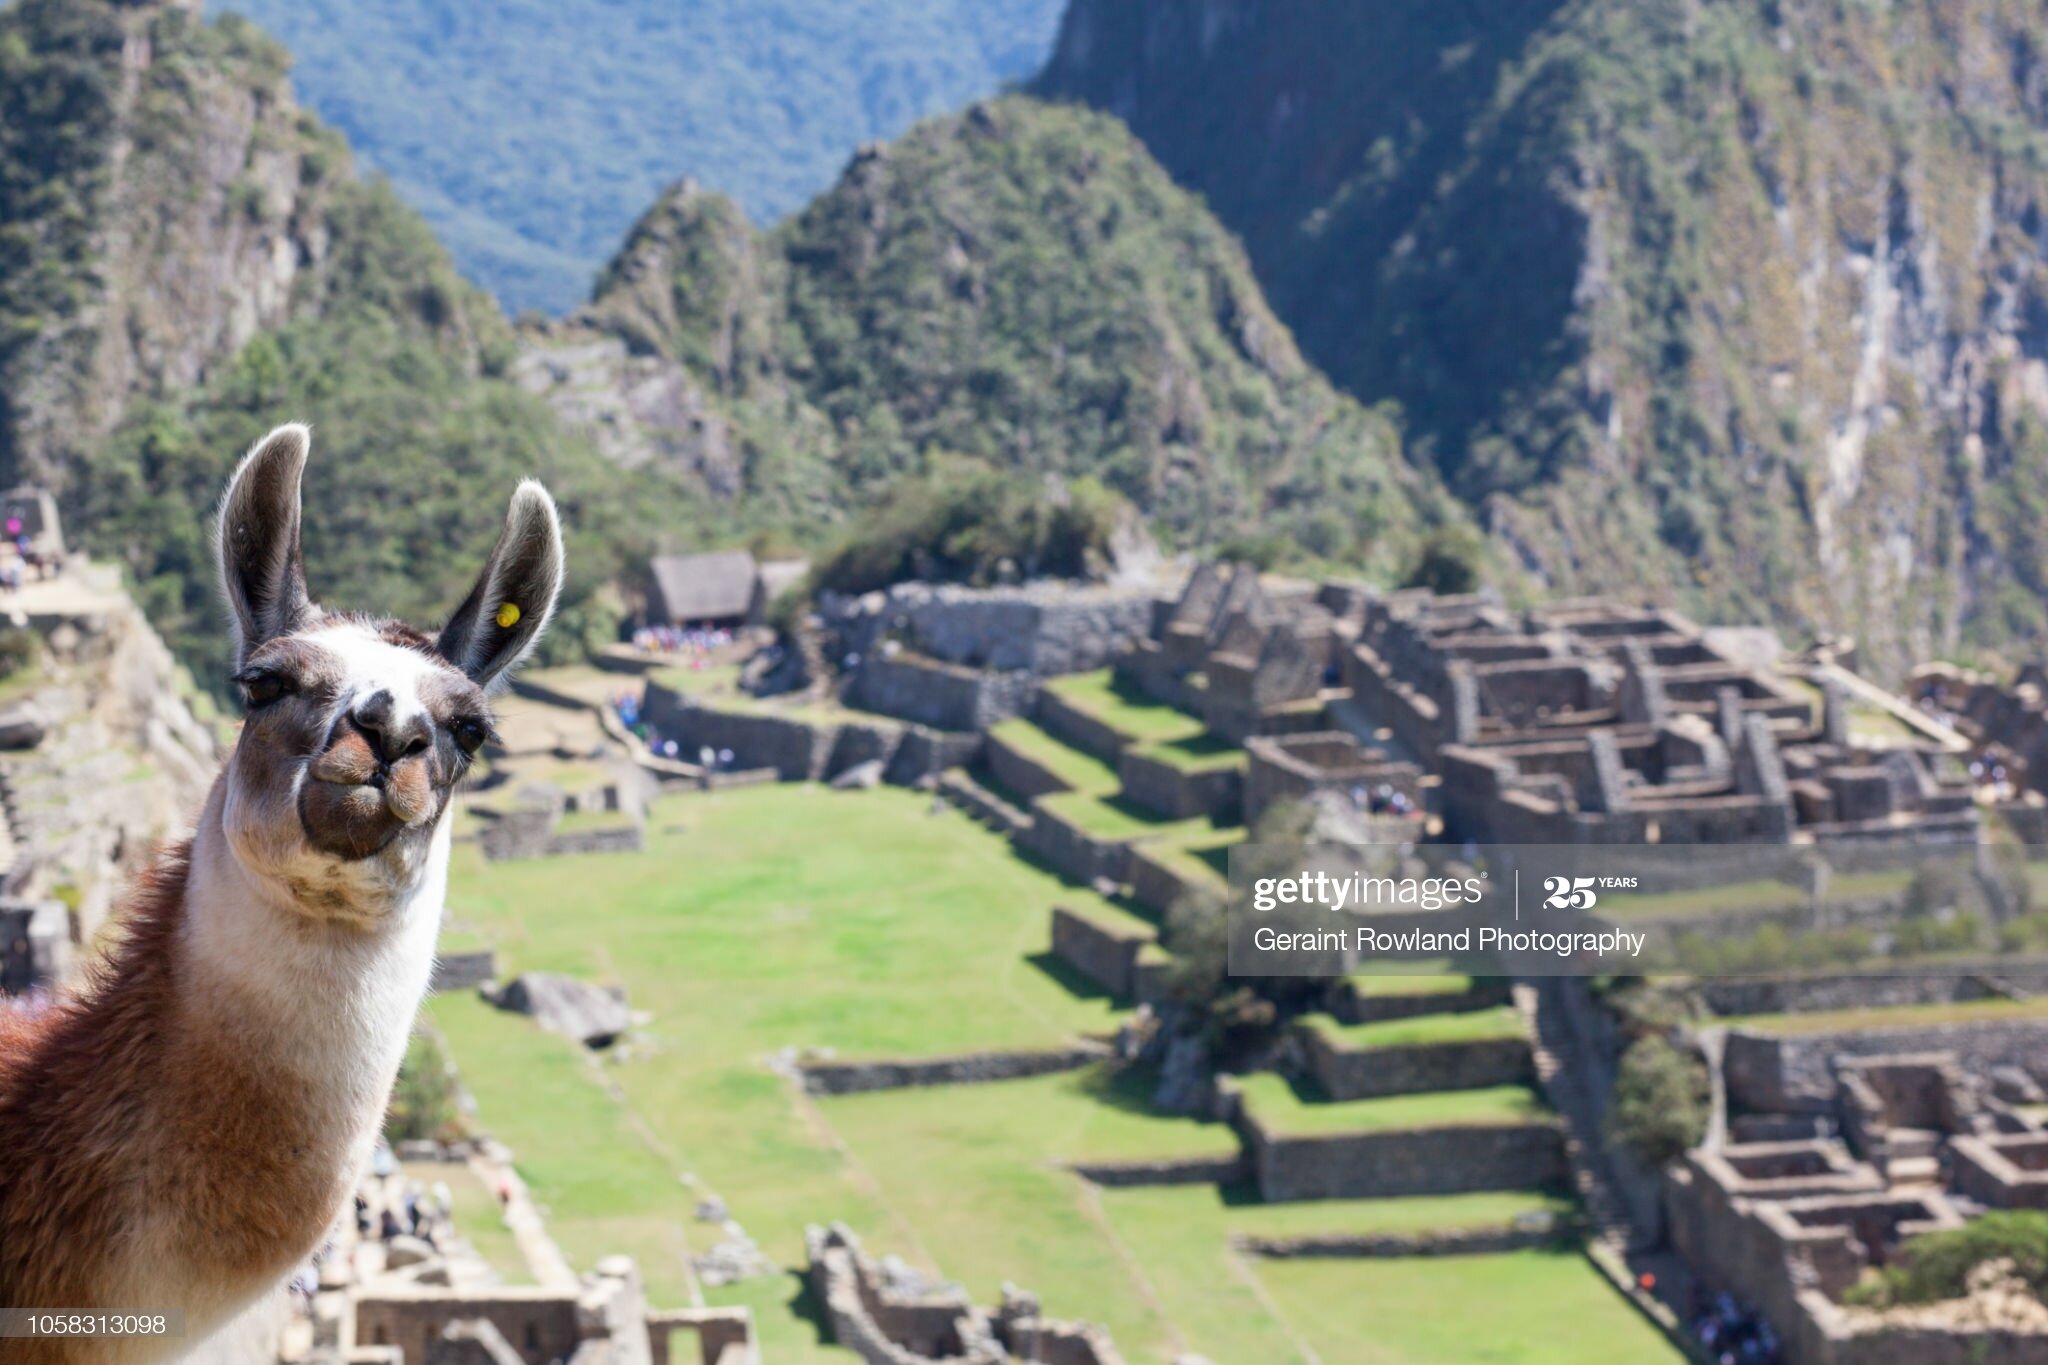 A llama welcomes tourists to Machu Picchu in Peru.